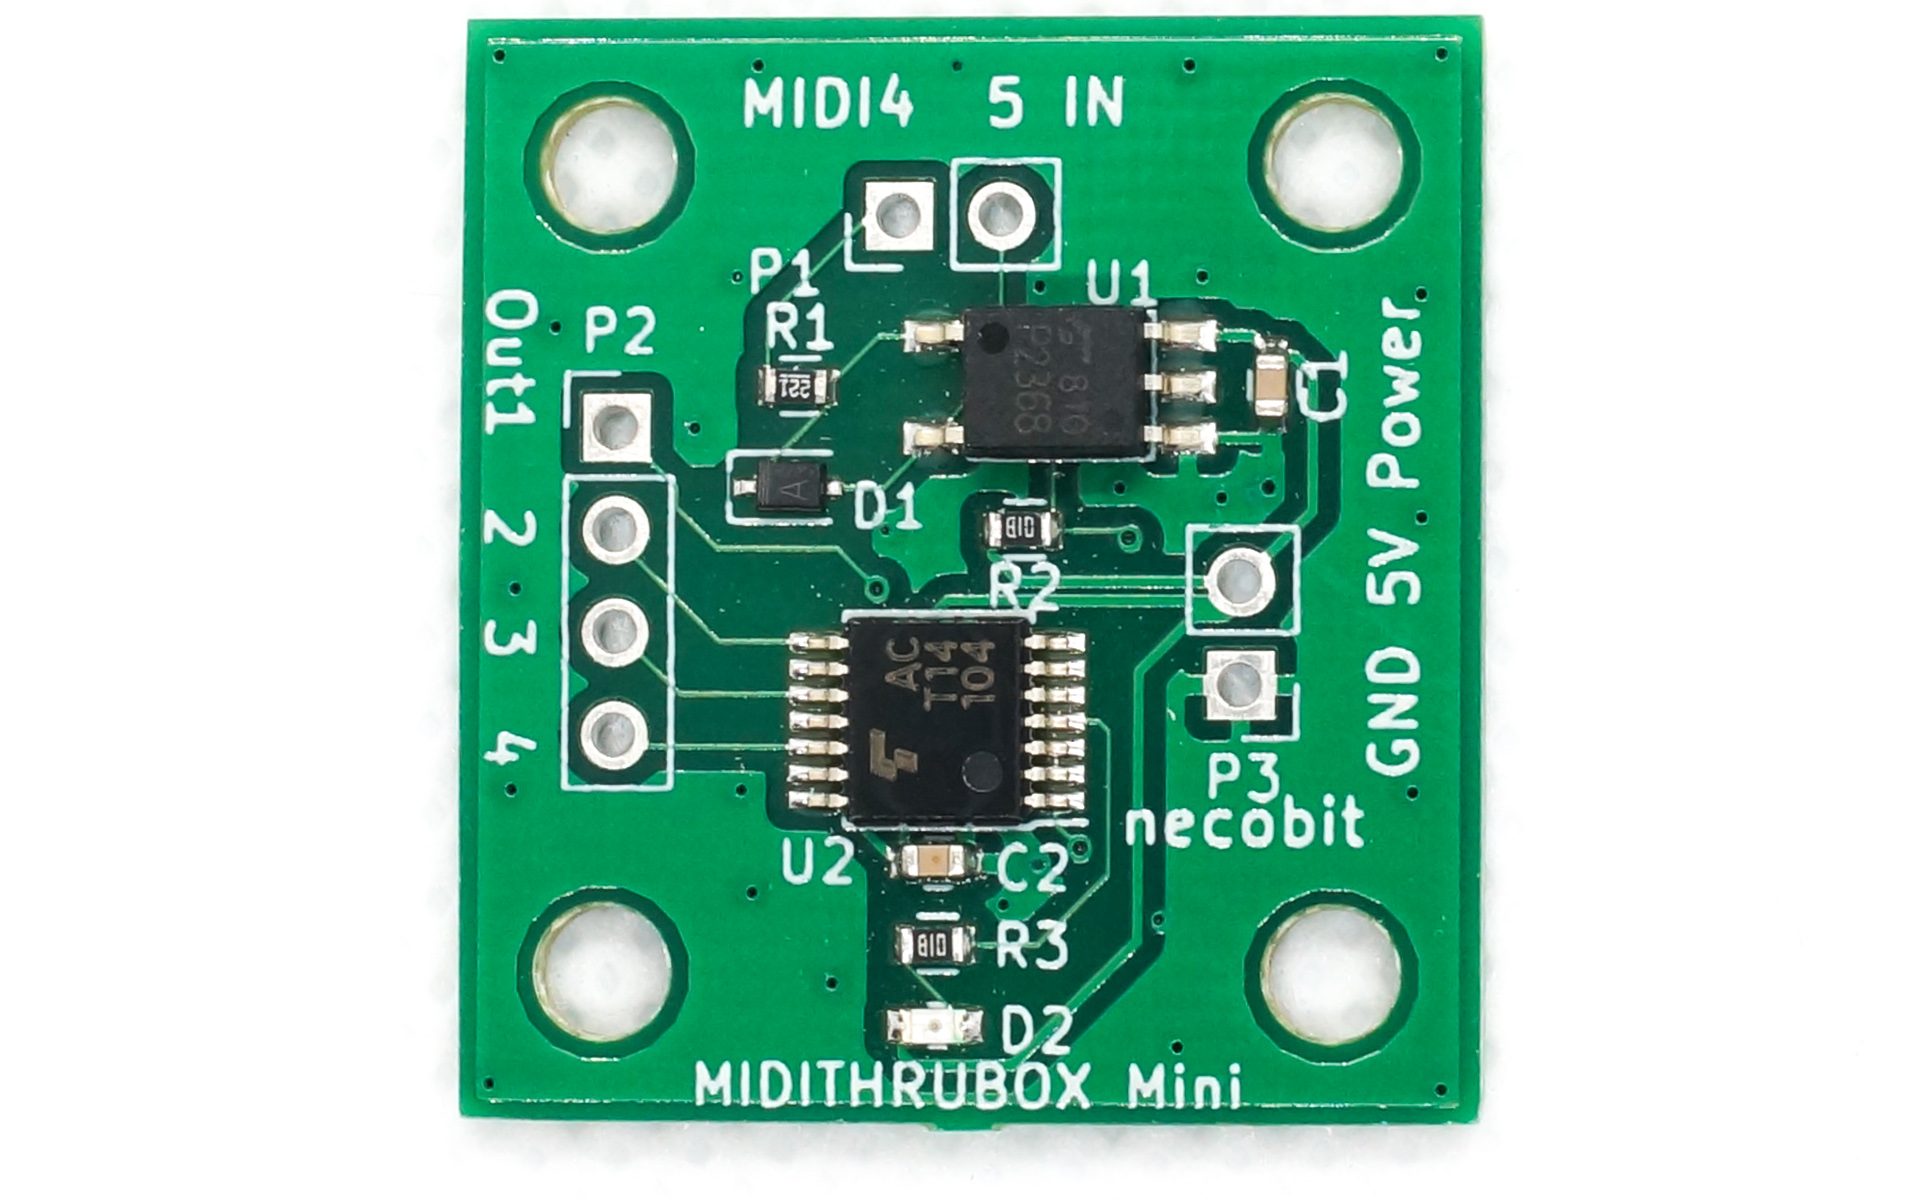 MIDI THRUBOX Mini